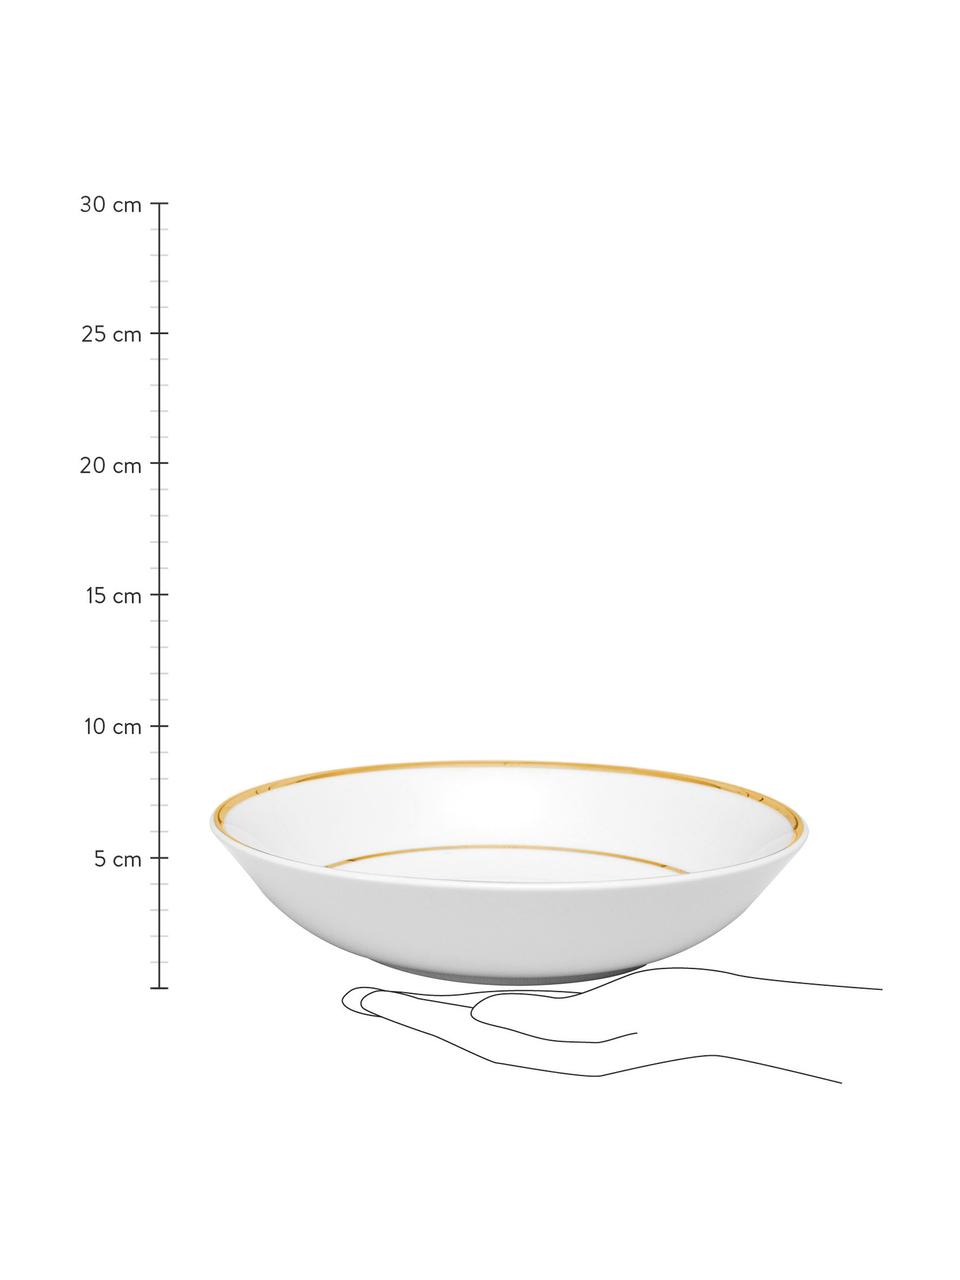 Porzellan-Suppenteller Ginger, 6 Stück, Porzellan, Weiß, Goldfarben, Ø 23 x H 5 cm